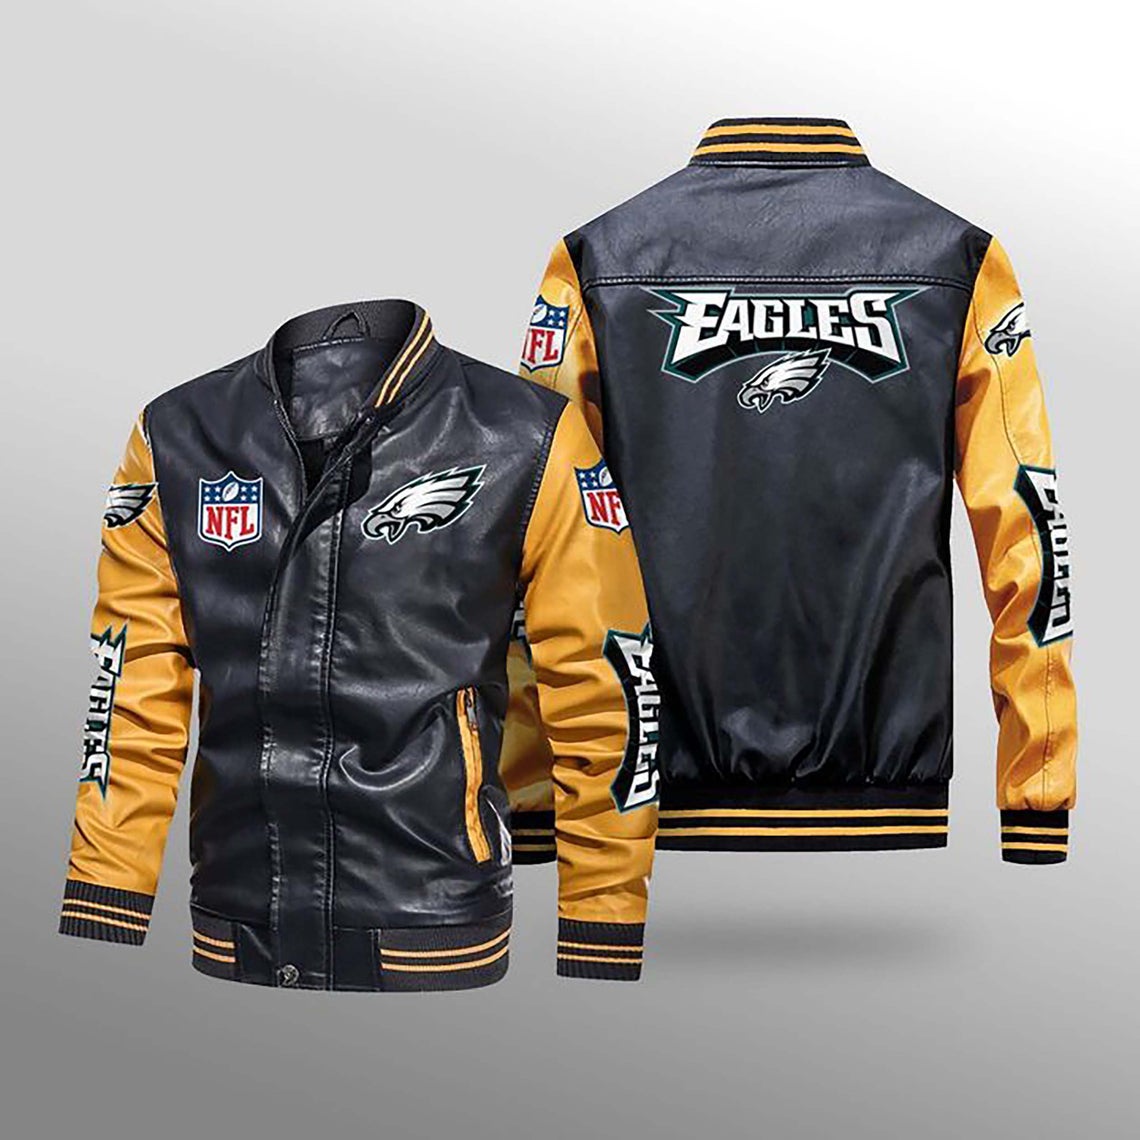 Philadelphia eagles leather jacket NFL large like new 100 dollars